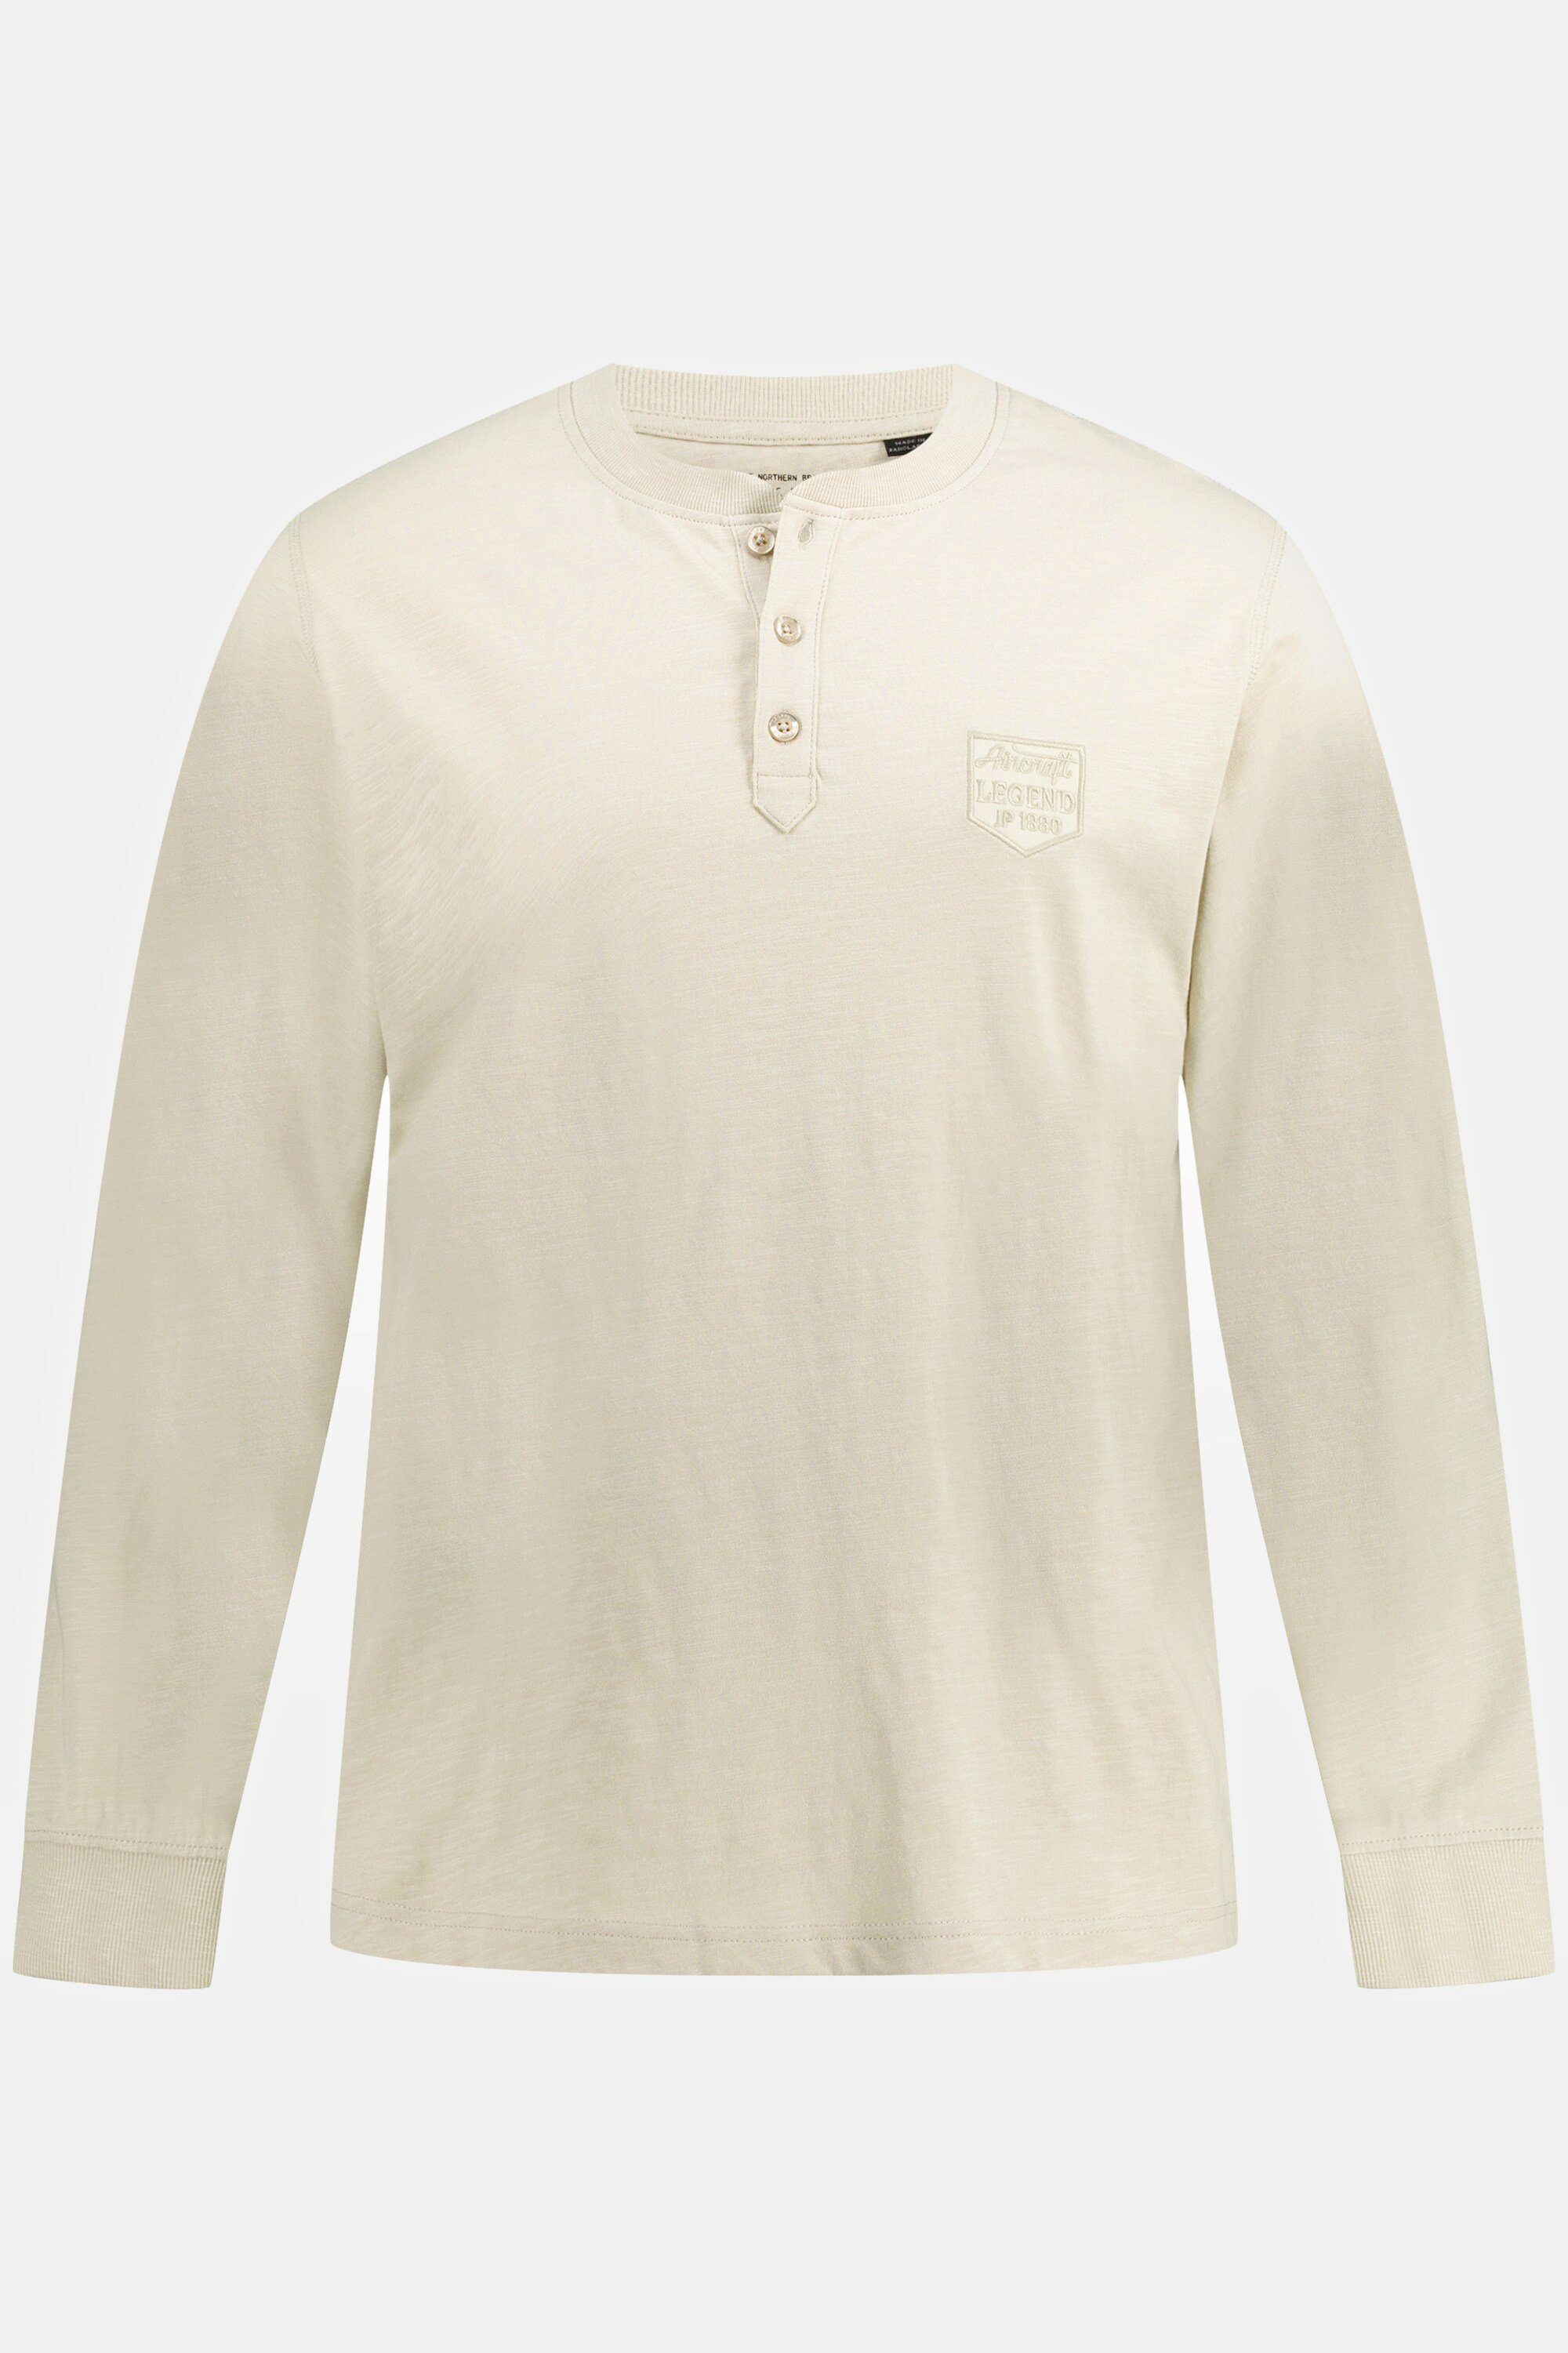 Flammjersey sand-beige JP1880 Rundhals Langarm Knopfleiste Henley T-Shirt